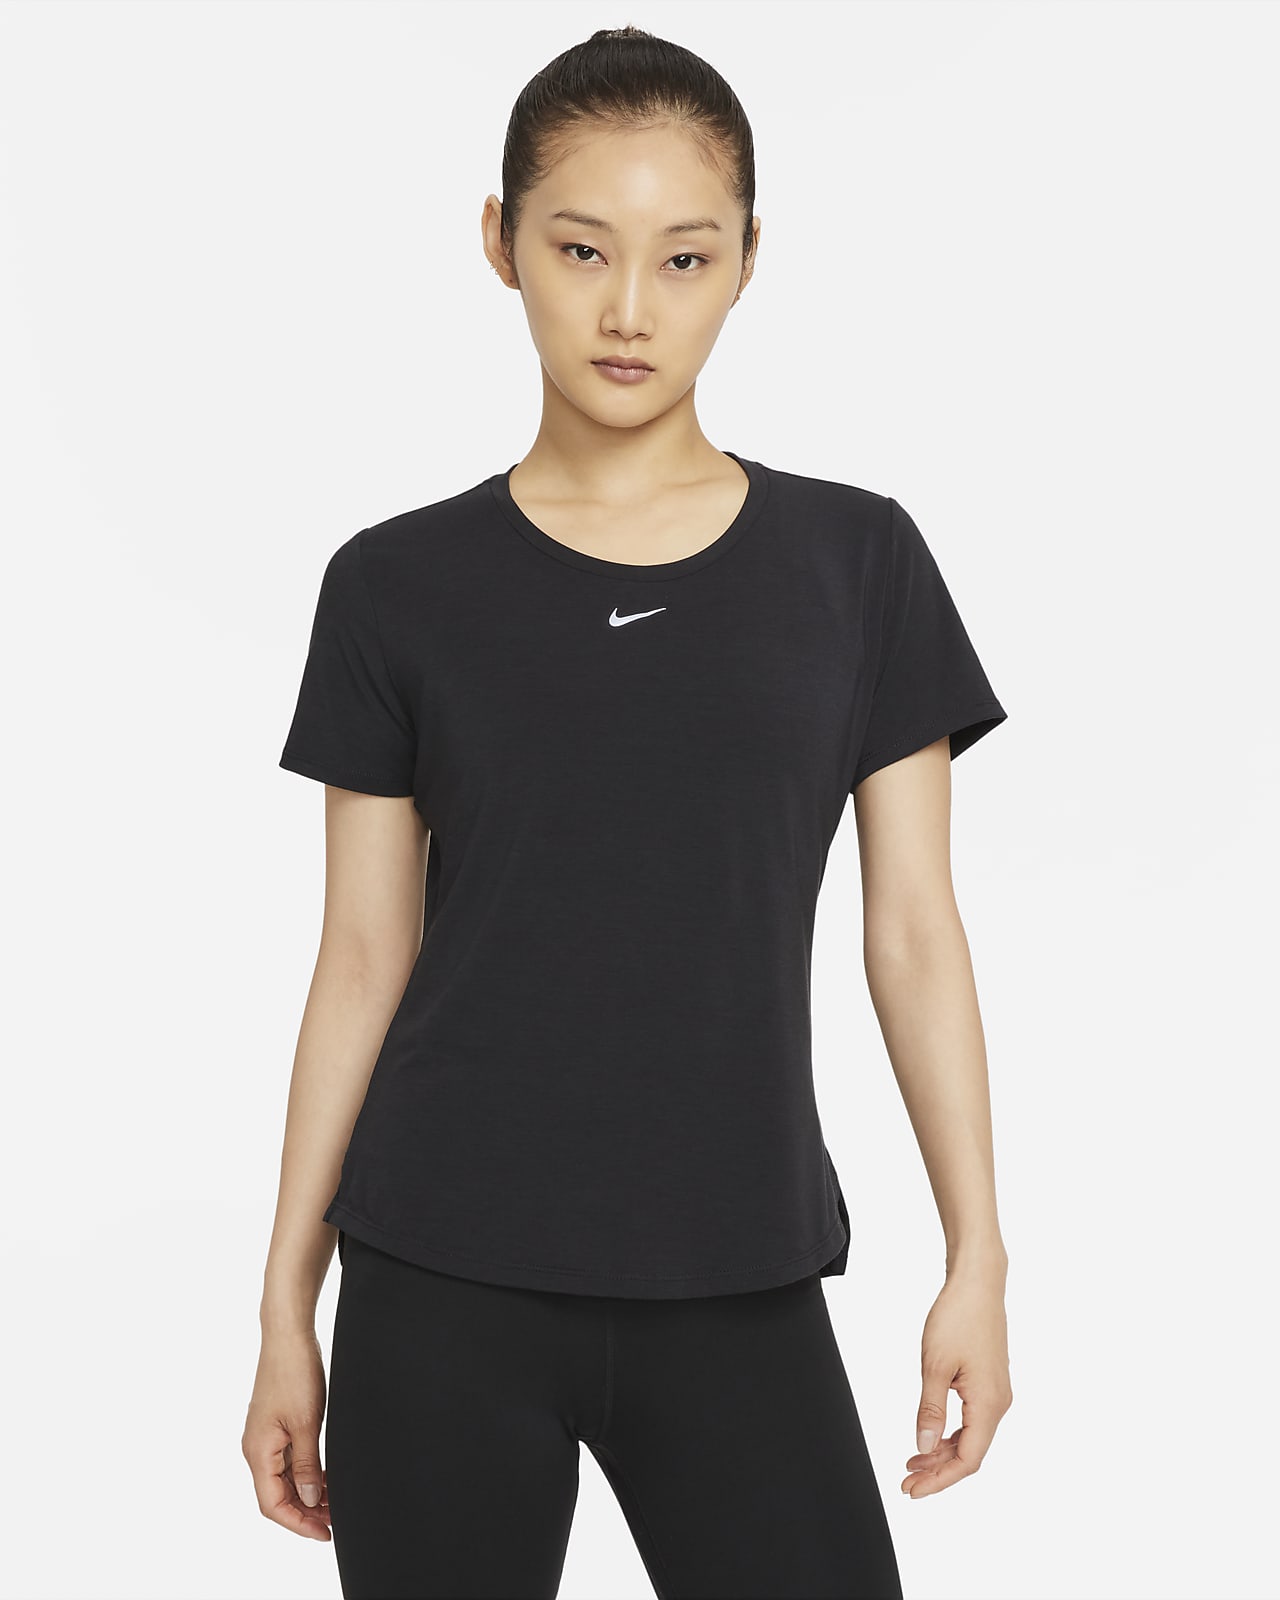 เสื้อแขนสั้นทรงมาตรฐานผู้หญิง Nike Dri-FIT One Luxe